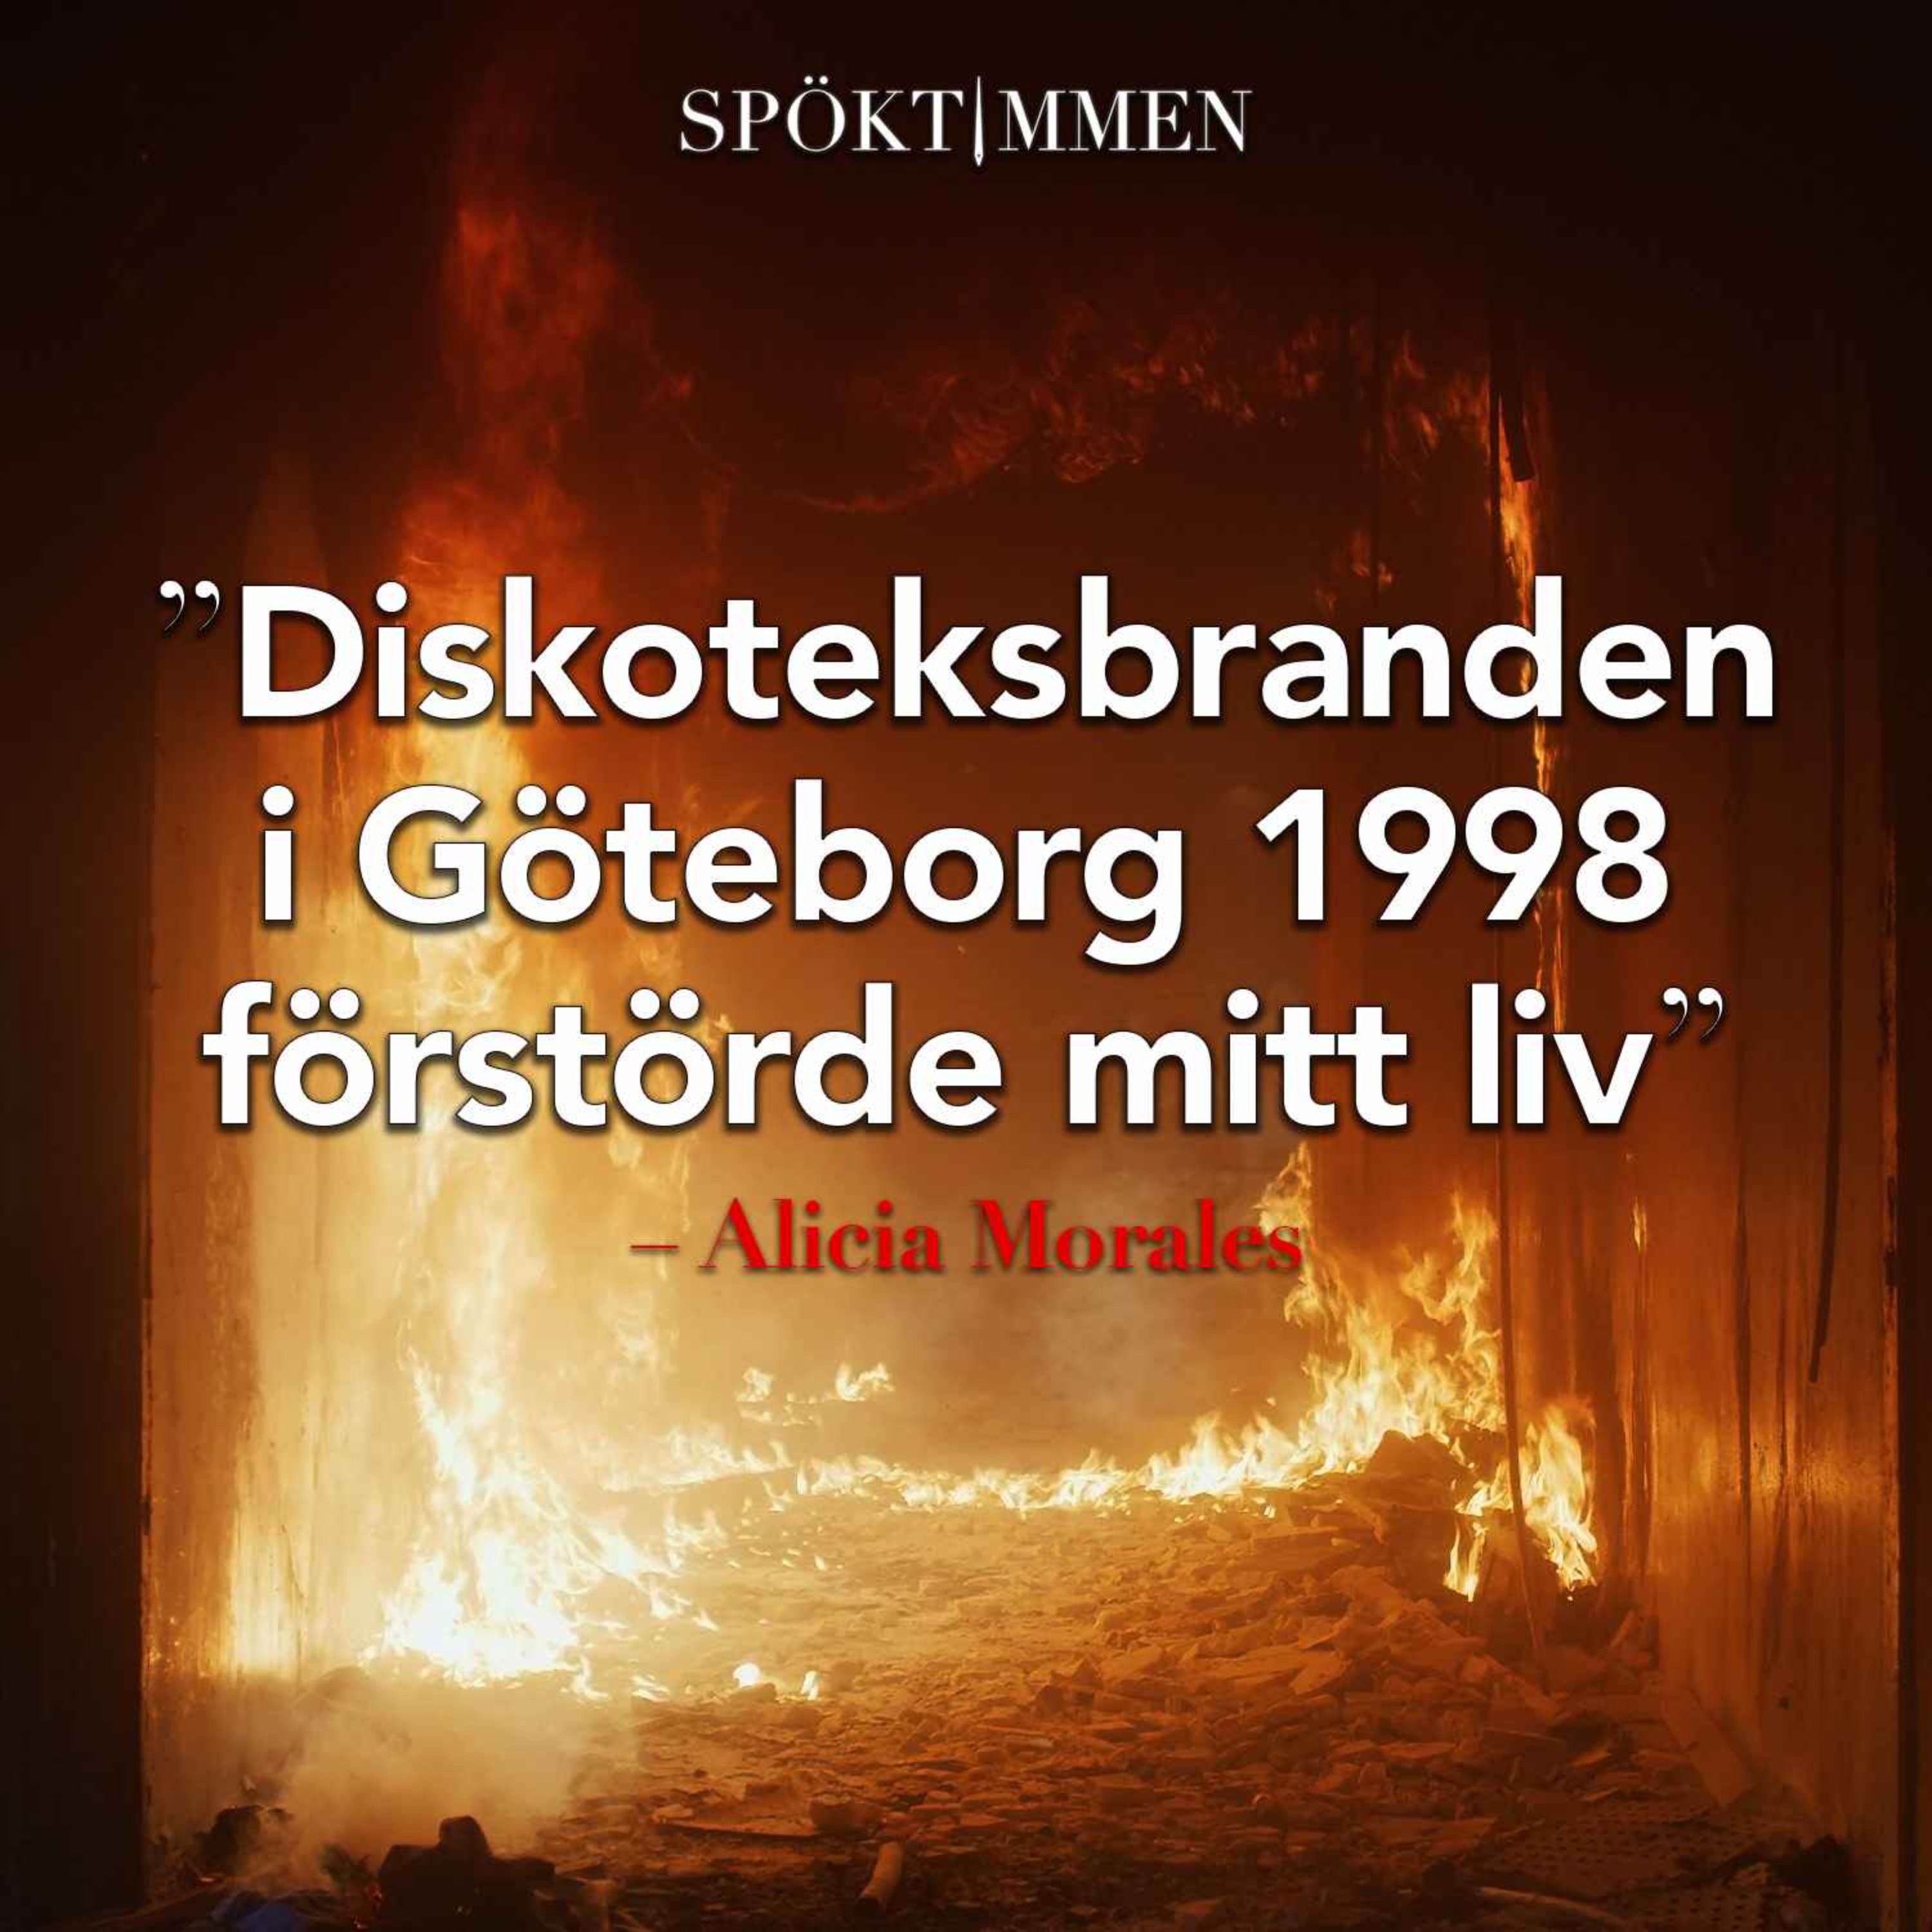 "Diskoteksbranden i Göteborg 1998 förstörde mitt liv" – Alicia Morales